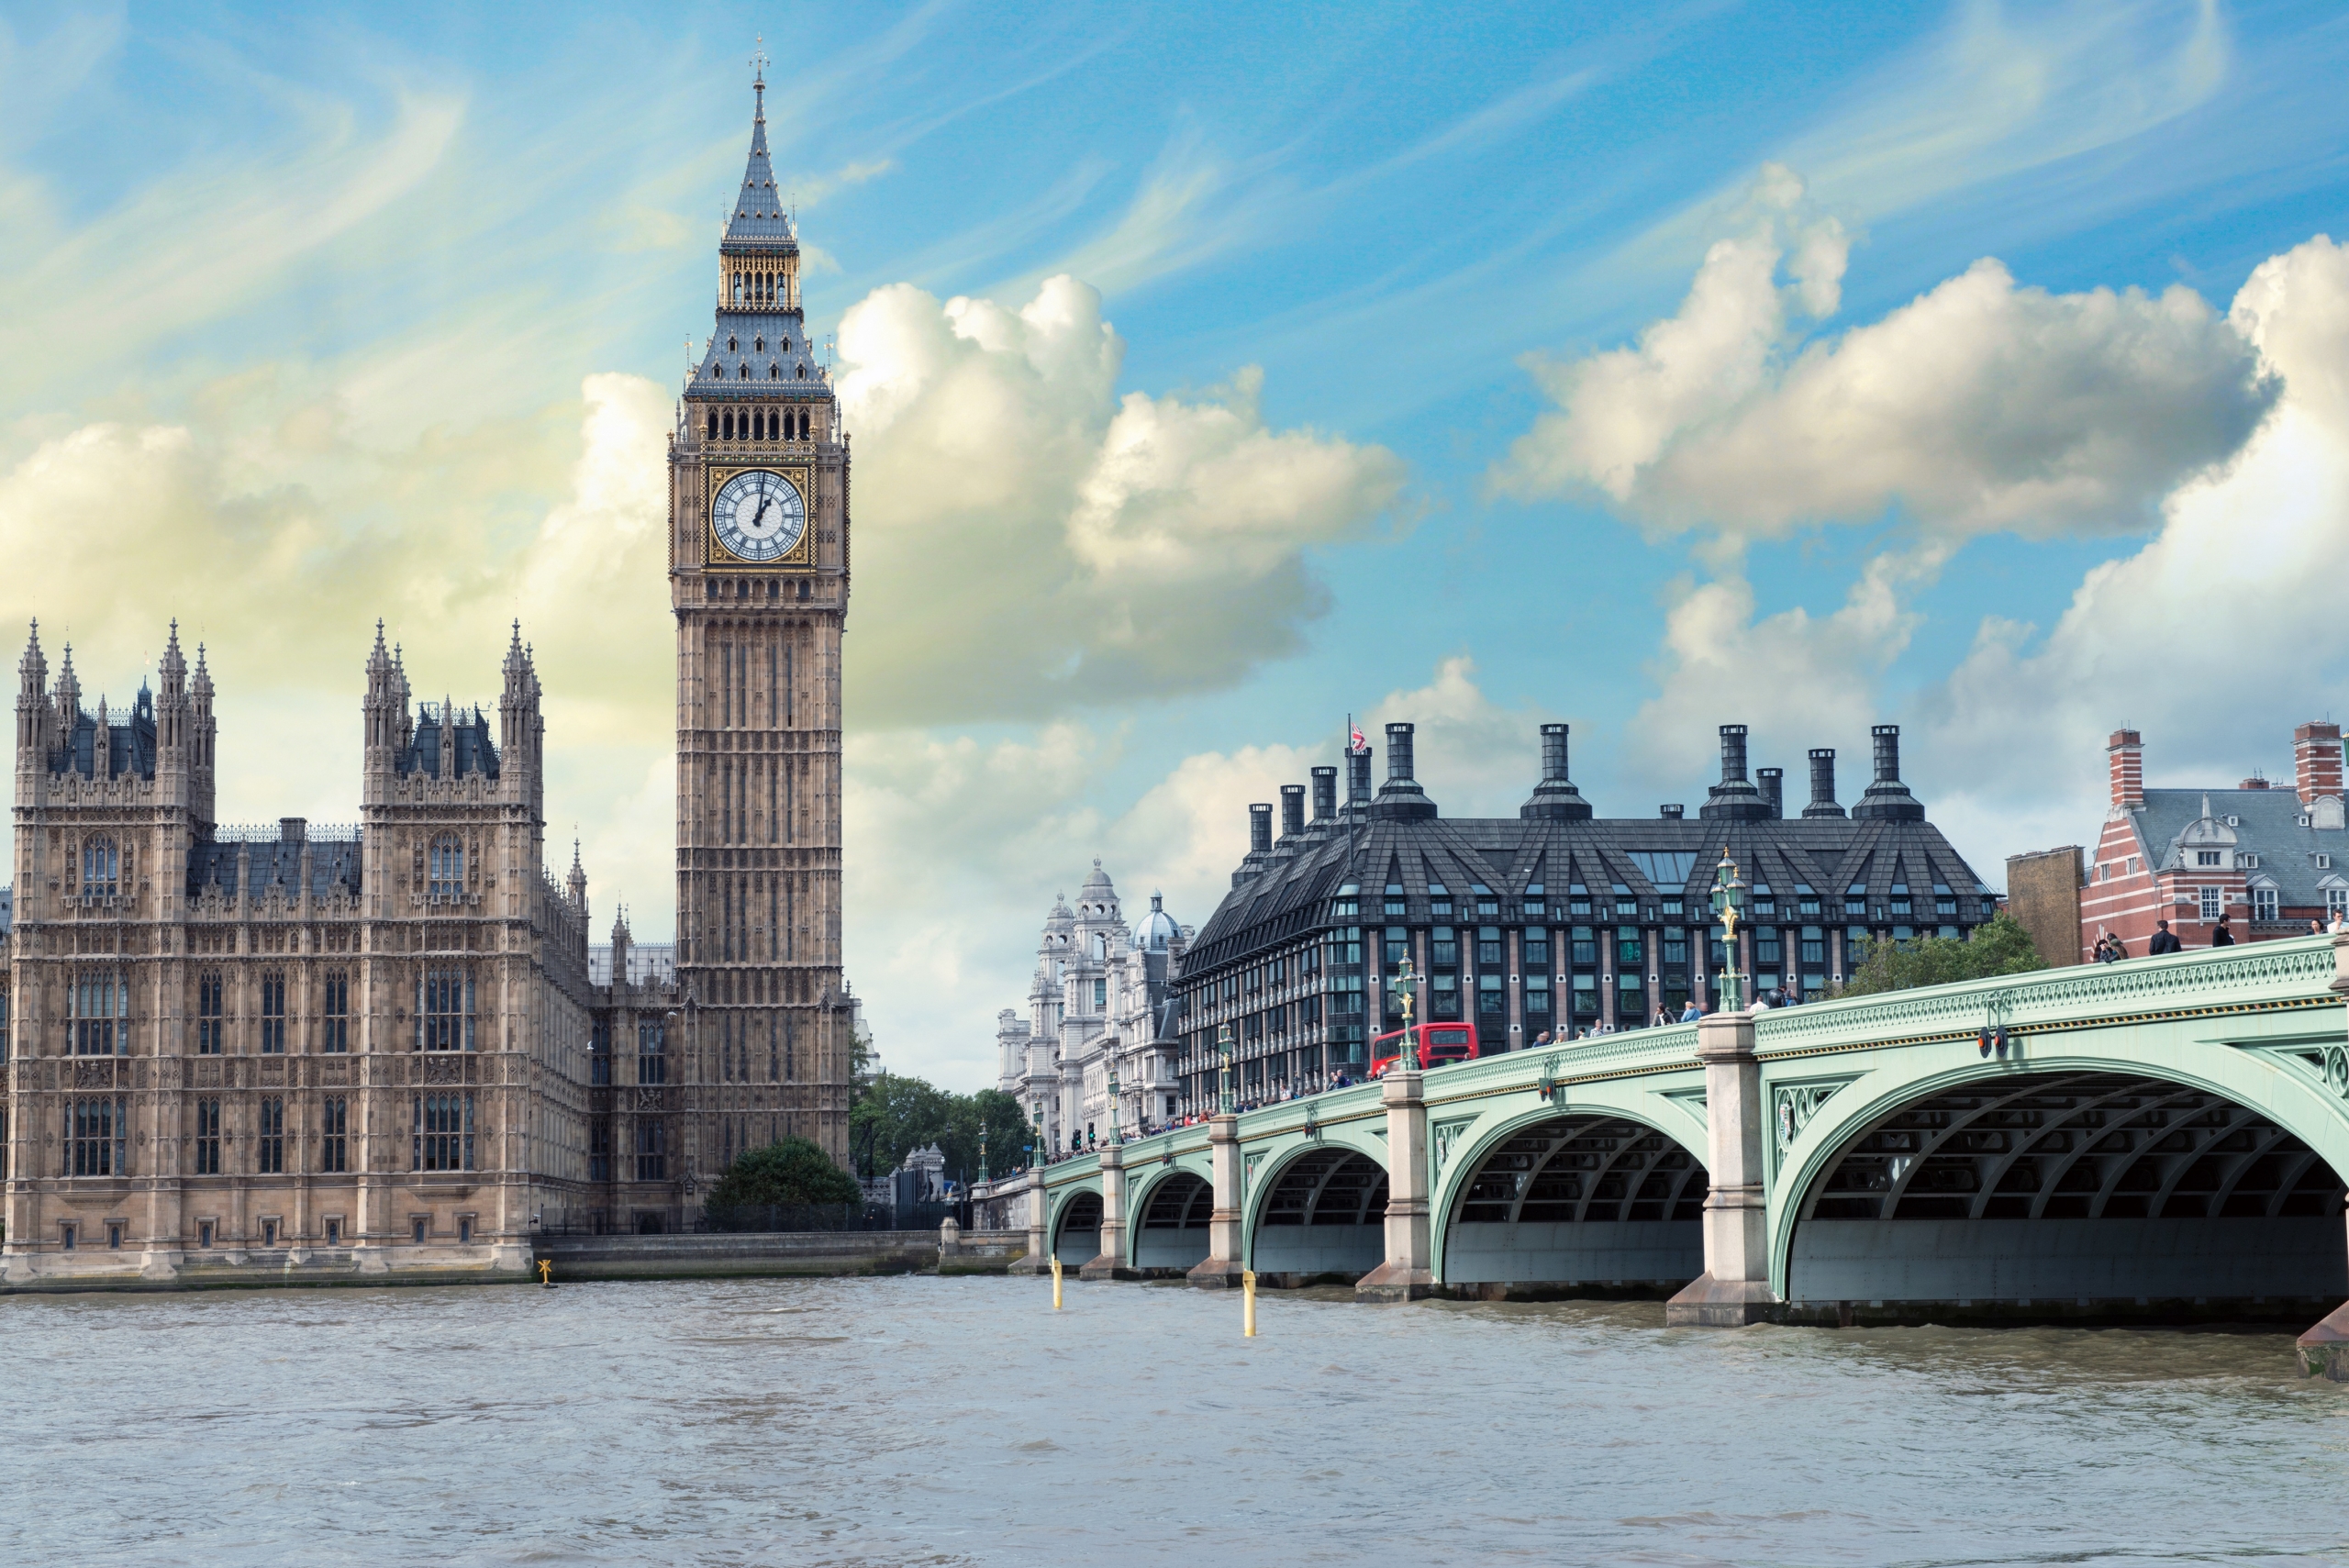 Tháp Big Ben, một trong những địa danh nổi tiếng ở London, Anh quốc. (Ảnh: Shutterstock)